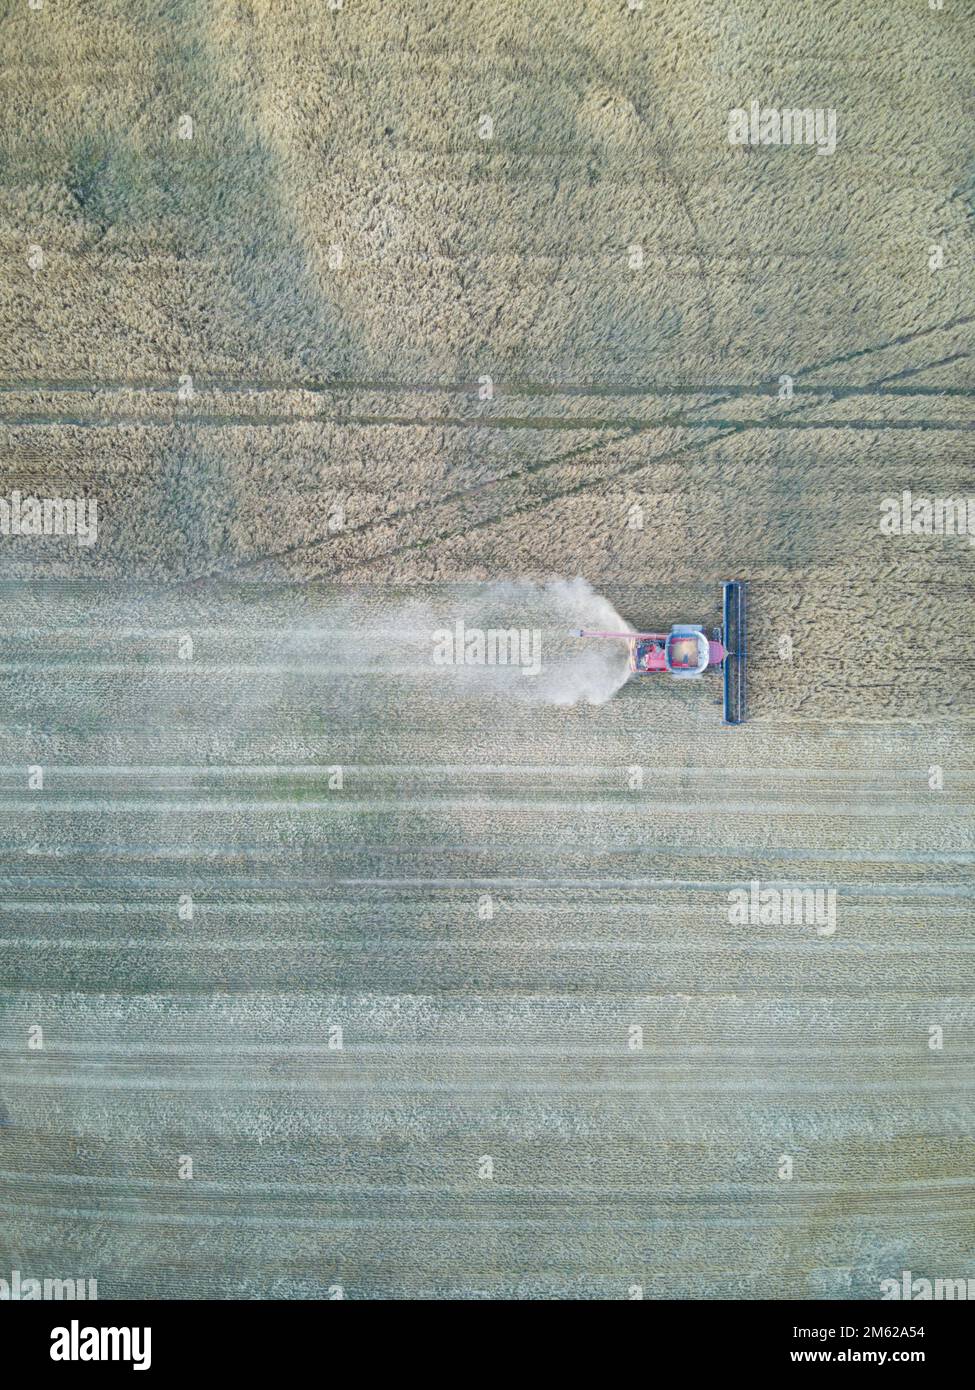 Macchina trebbiatrice funzionante che mostra segni di prodotto e cingoli, taglio attraverso un campo di grano secco, Victoria, Australia. Foto Stock